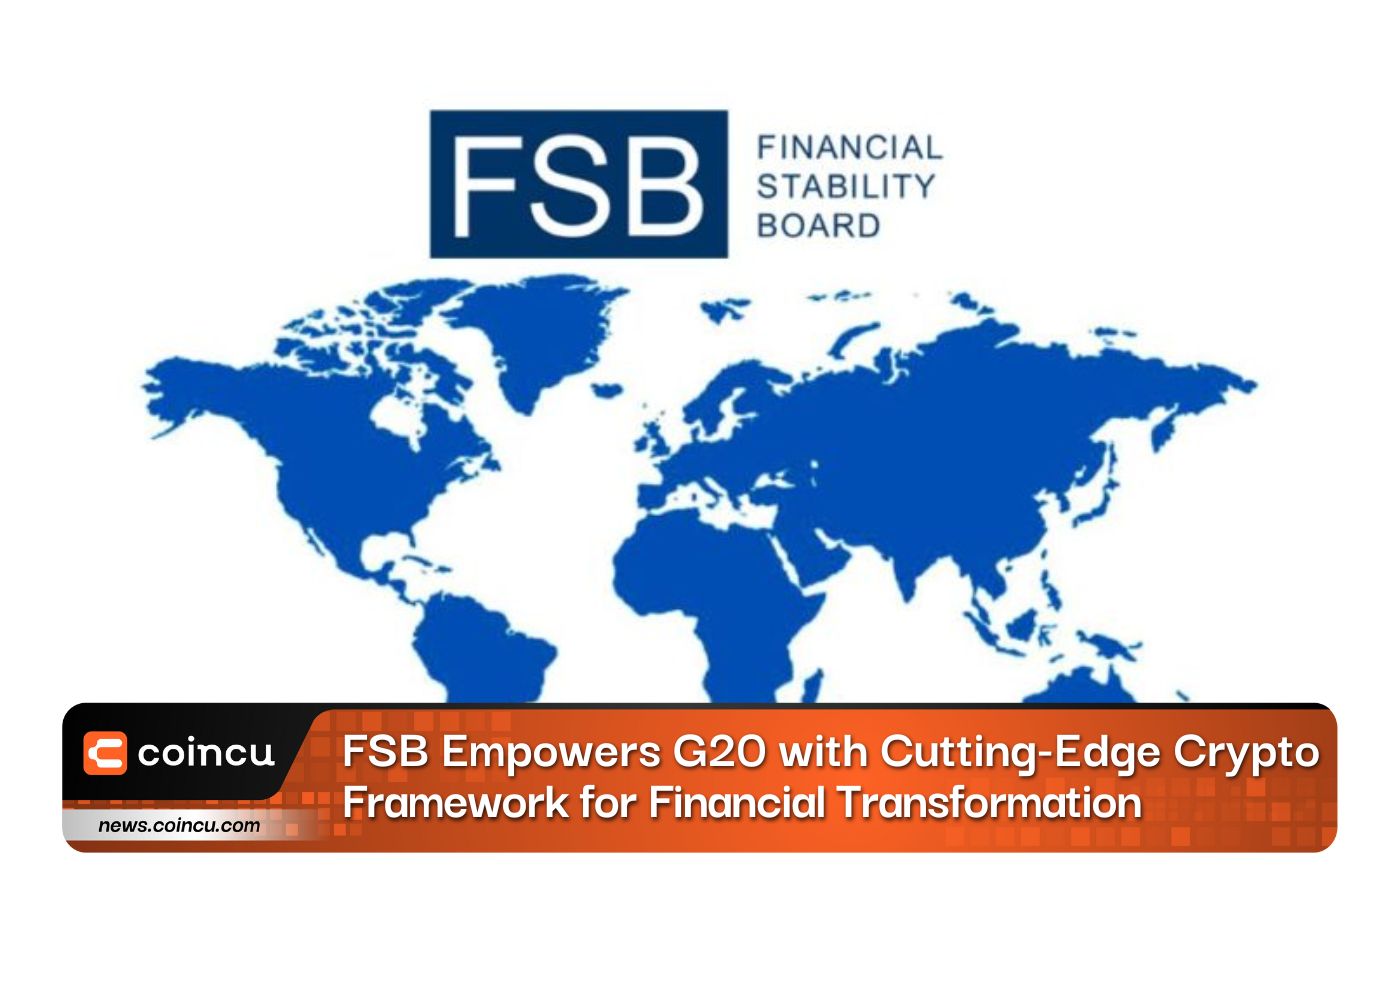 FSB capacita G20 com vanguarda